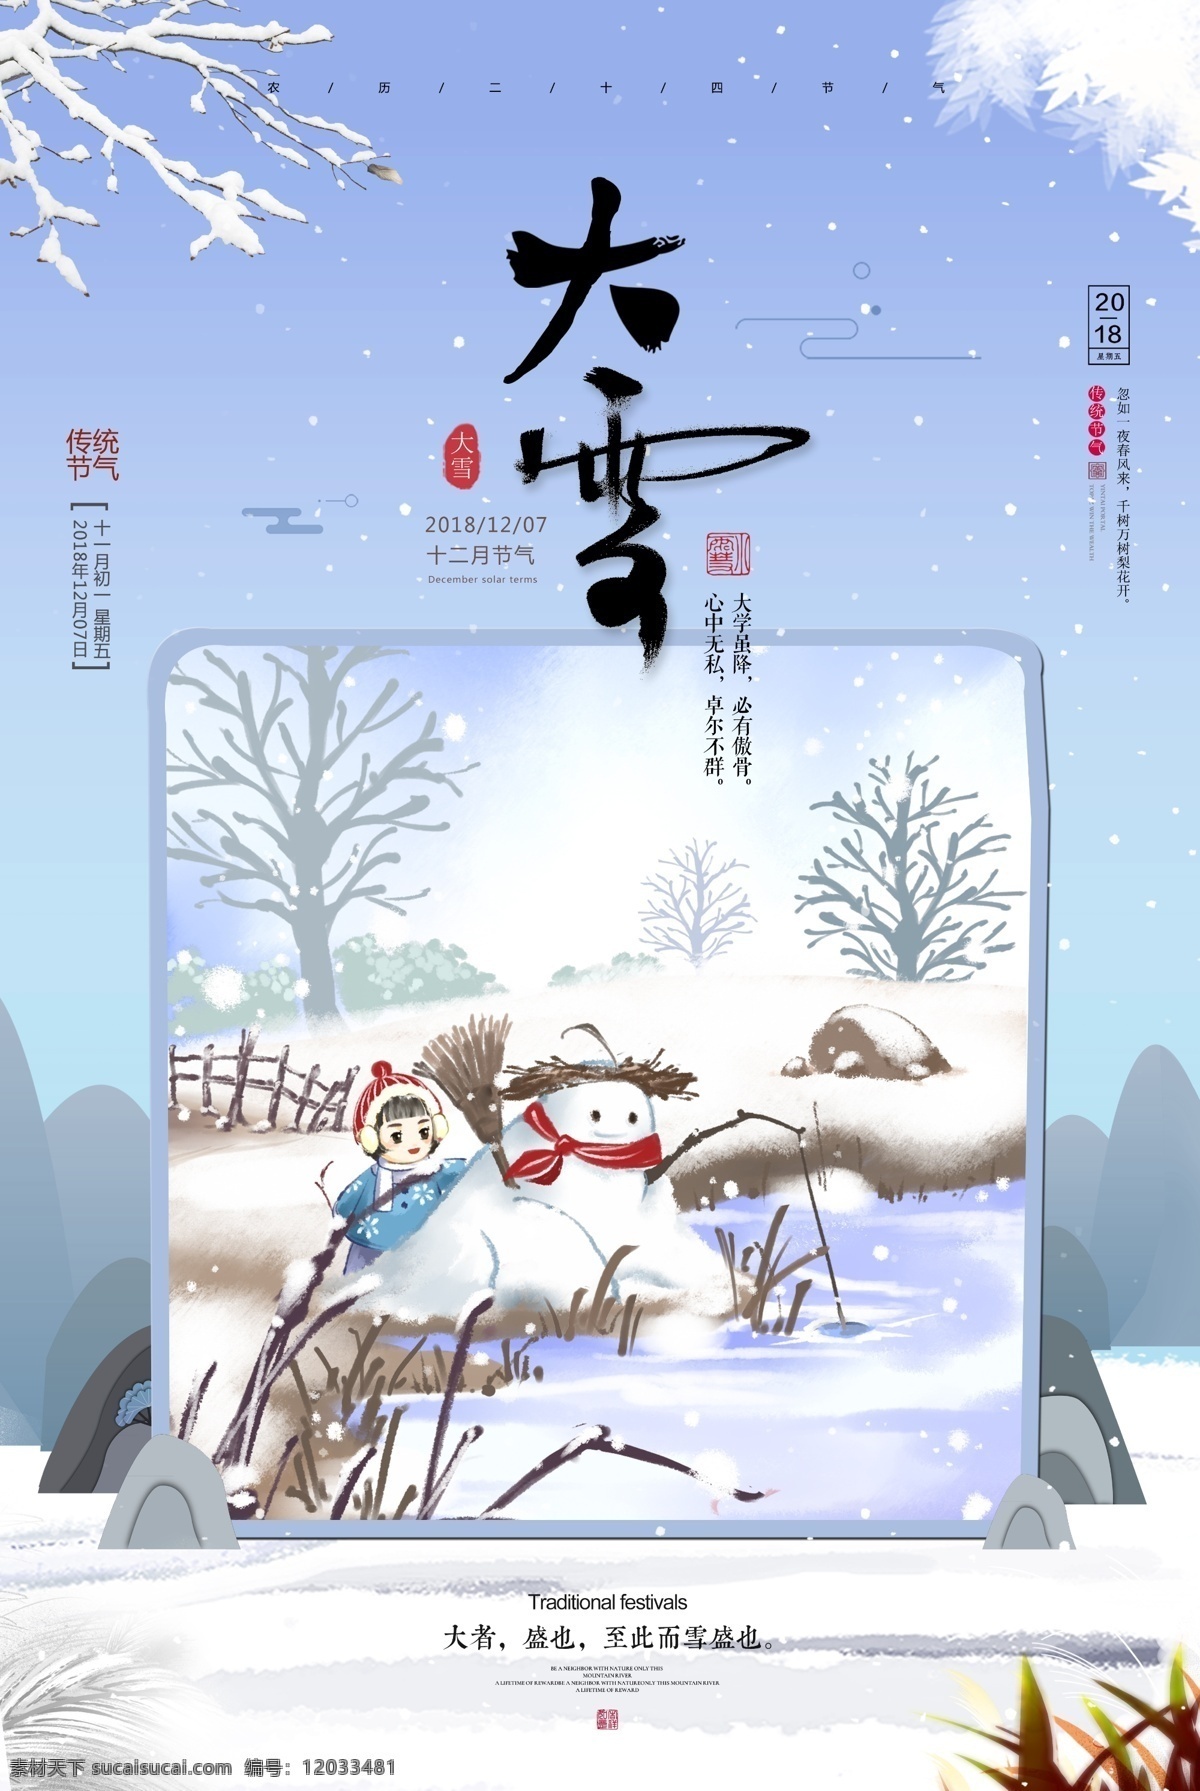 插画 二十四节气 大雪 海报 模板 中国 传统 雪人插画 蓝色调 枝头挂雪